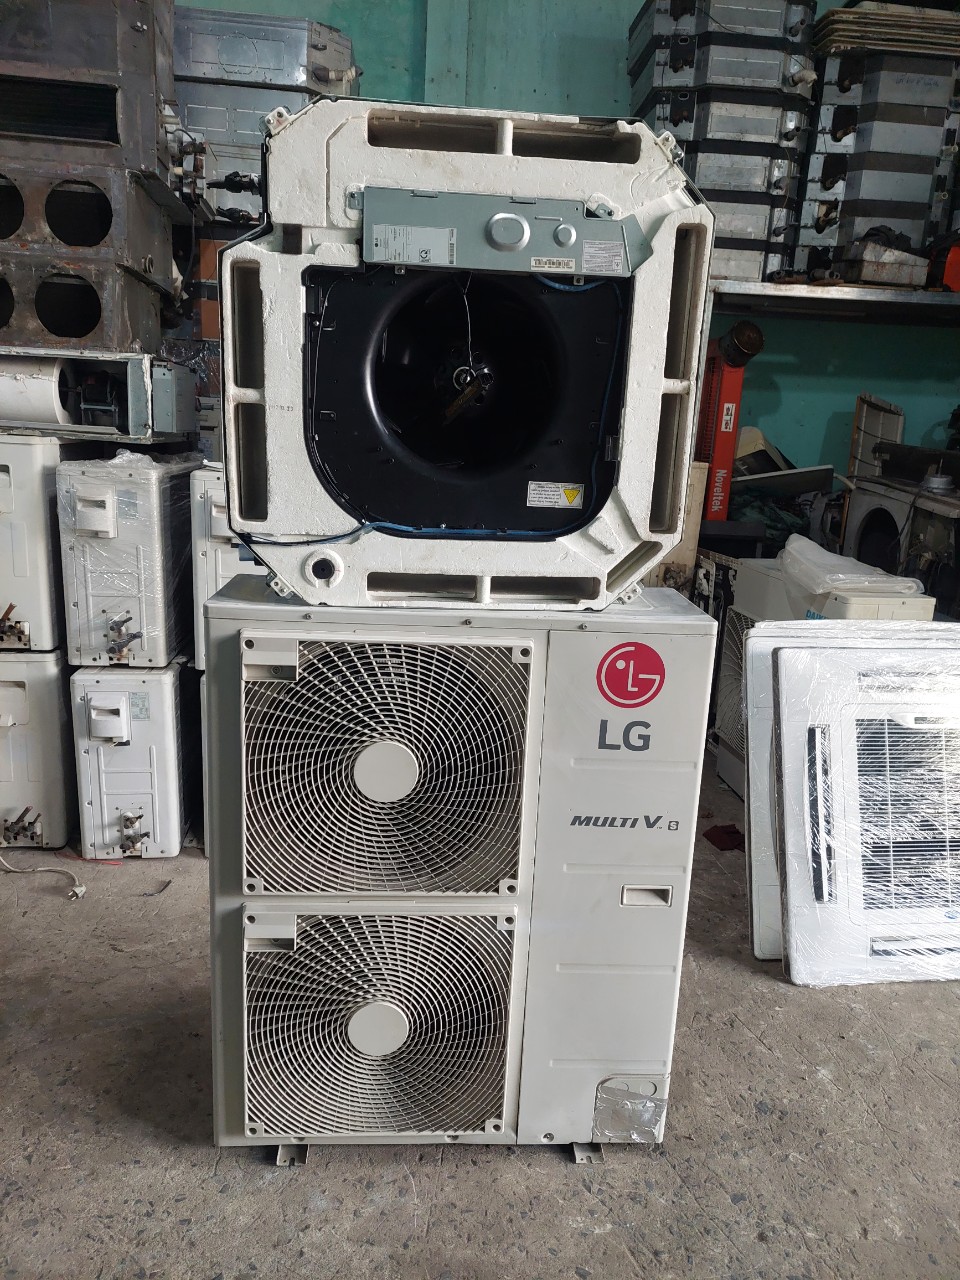 Lắp máy lạnh âm trần chính hãng Tây Ninh - 0907 243 680 Mr Bảo